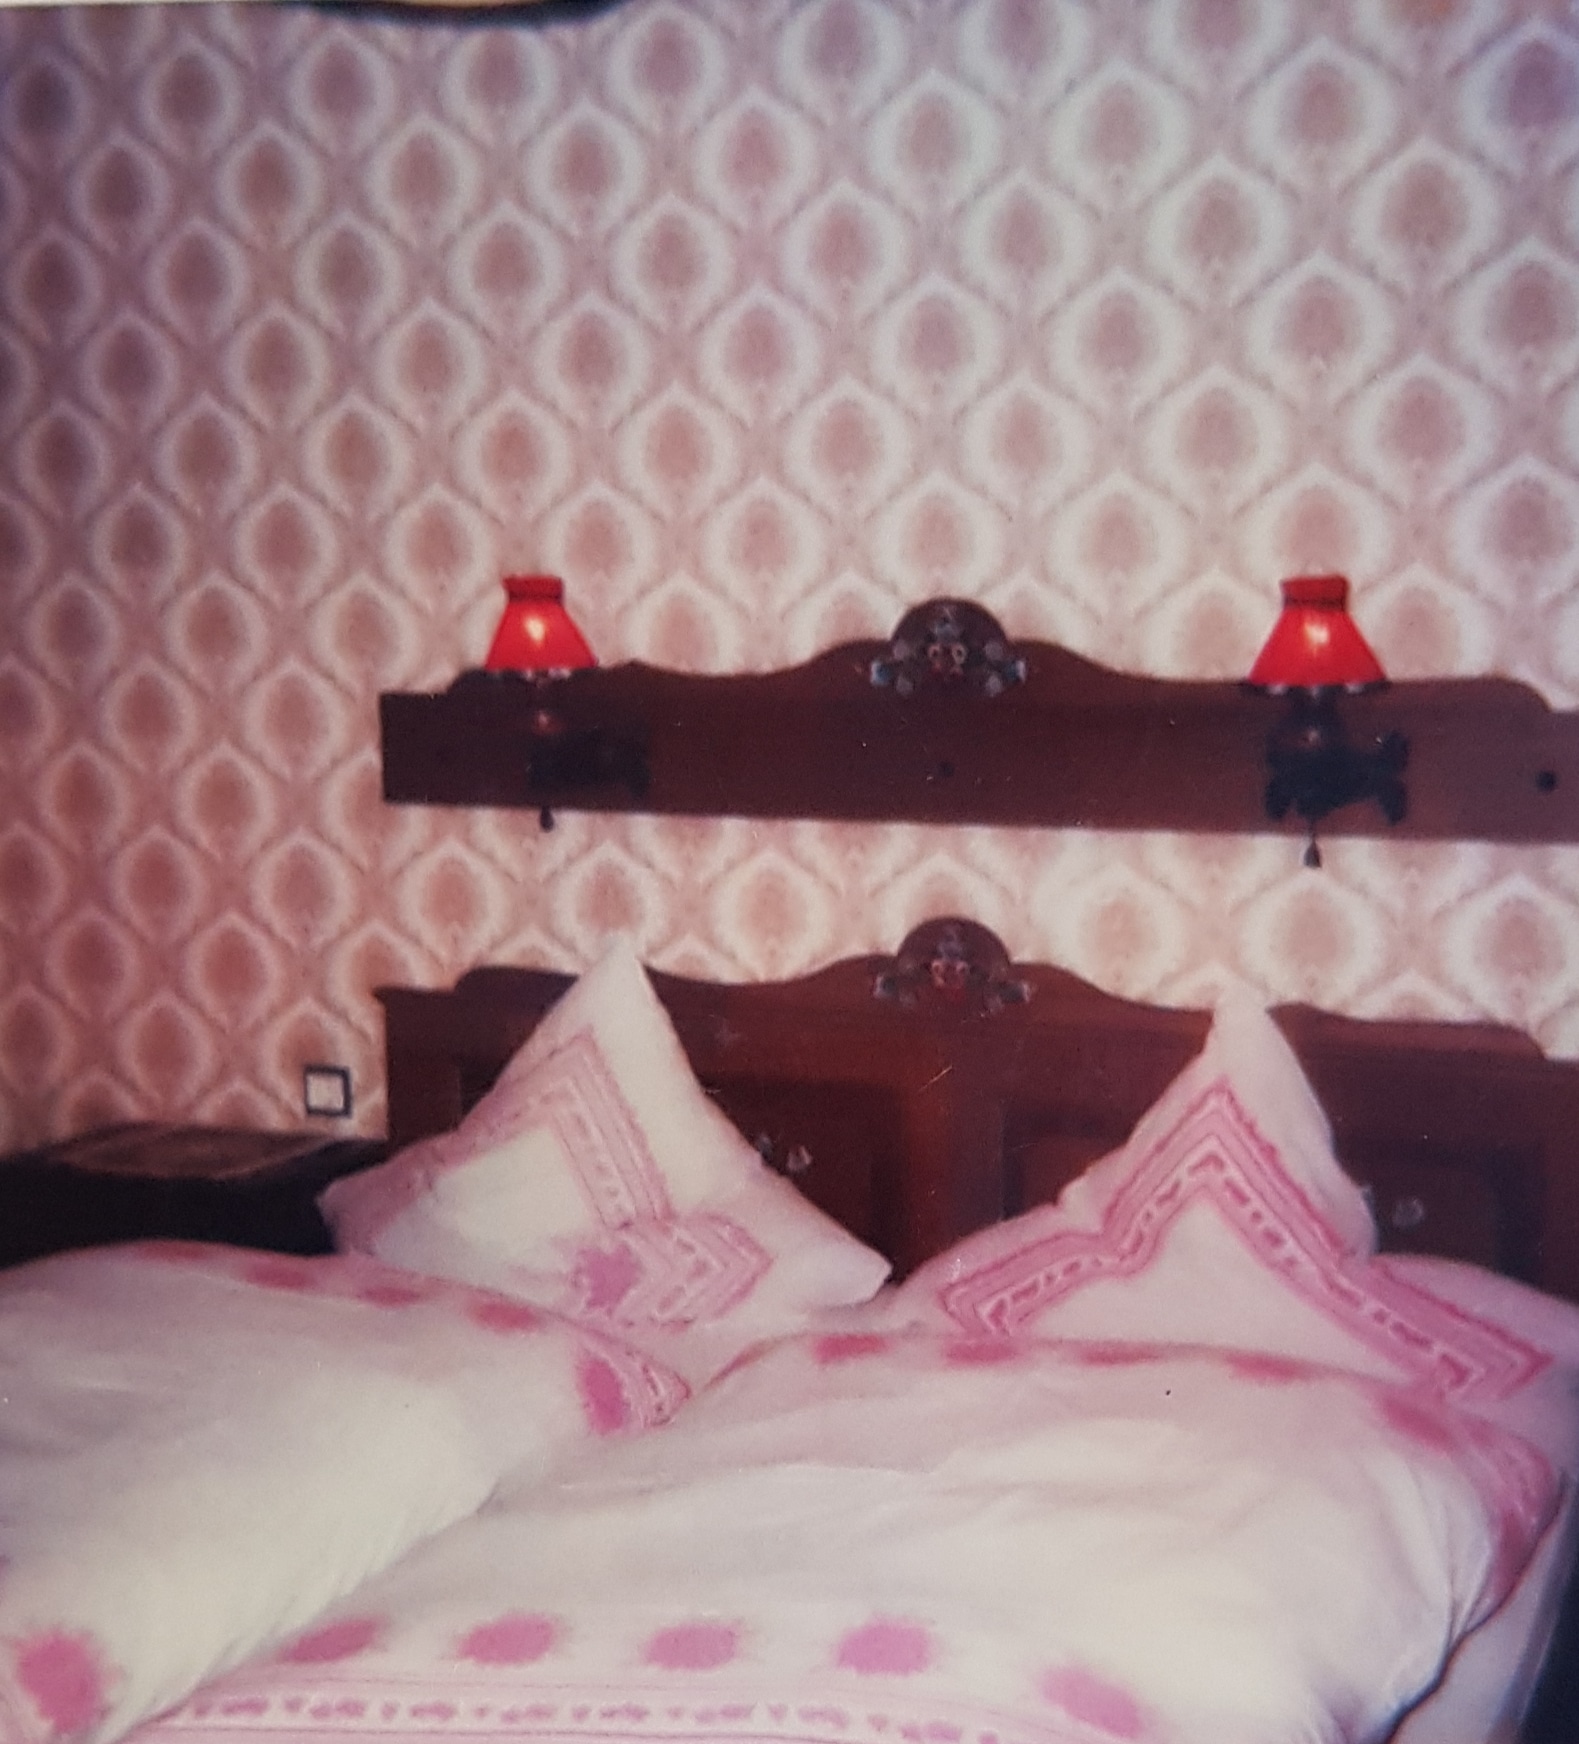 Doppelbett mit rustikaler Bemalung und Holzbrett mit Lampenschirmen an der Wand